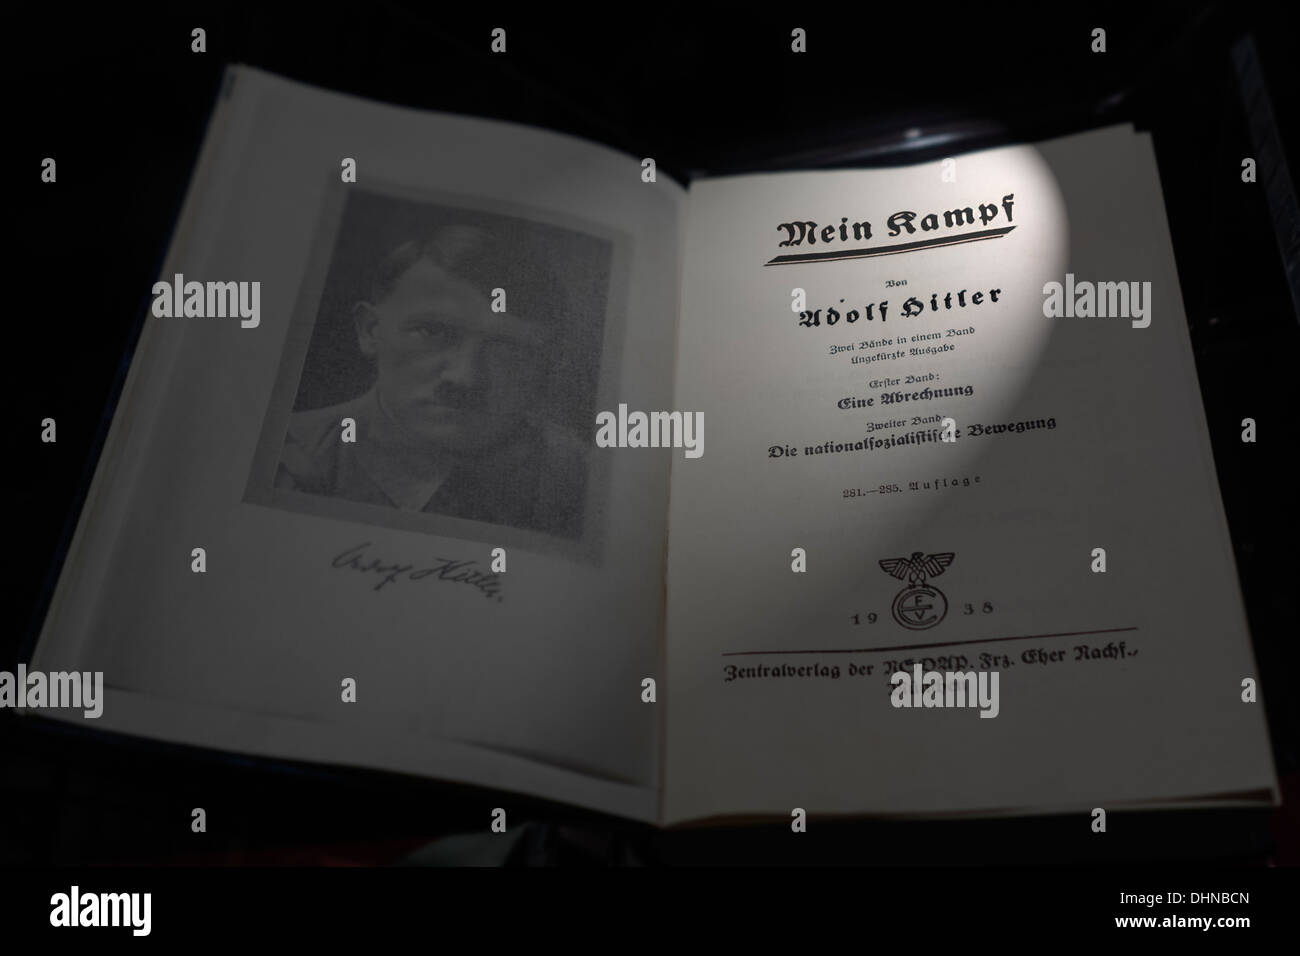 Le livre allemand / Mein Kampf, mon combat manifeste autobiographique par leader nazi Adolf Hitler Banque D'Images